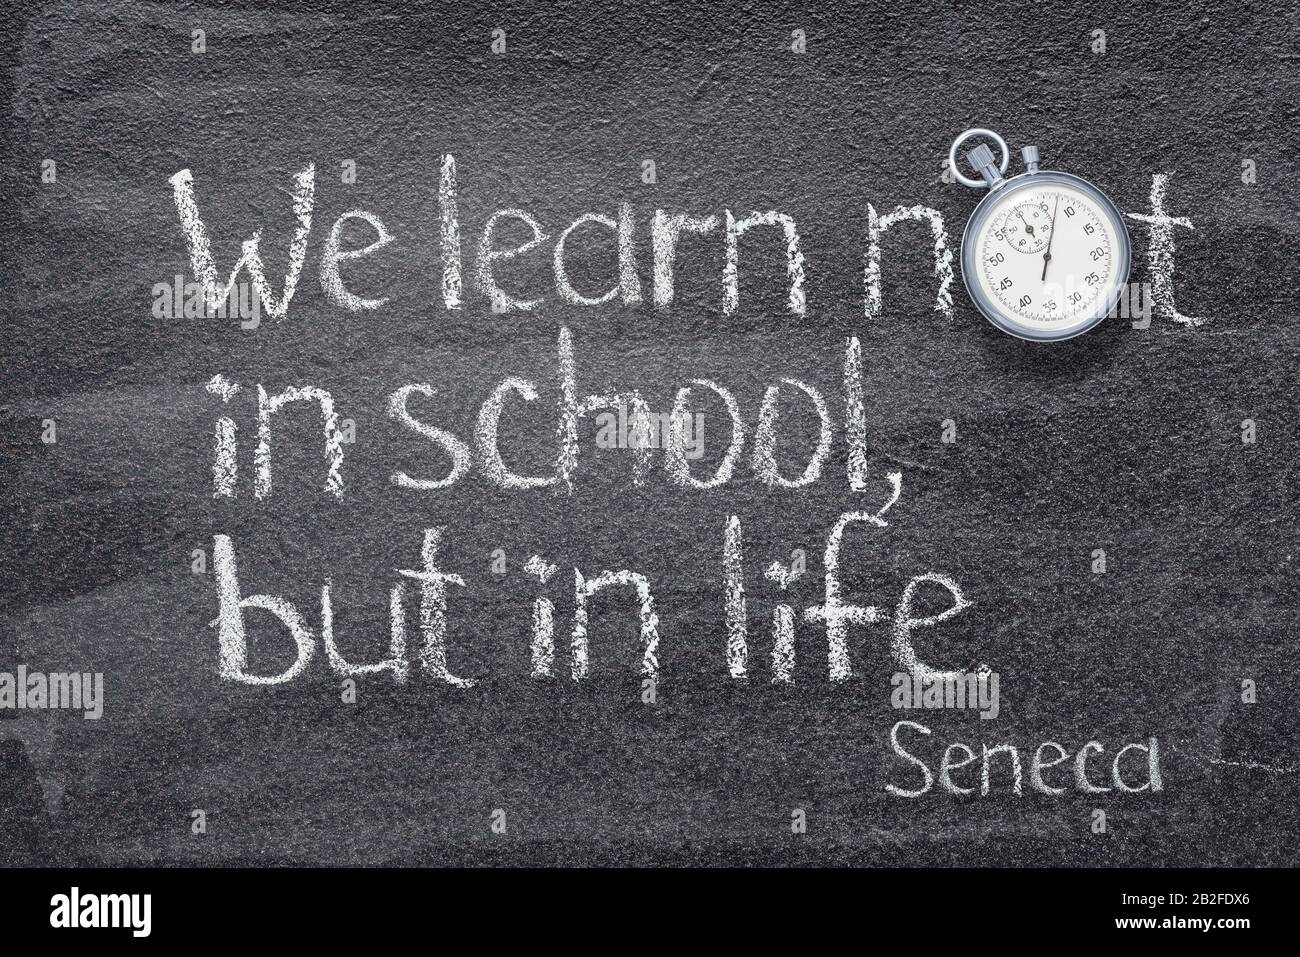 Wir lernen nicht in der Schule, sondern im Leben - ein Zitat des alten römischen Philosophen Seneca, das auf dem Schwarzen Brett geschrieben wurde Stockfoto